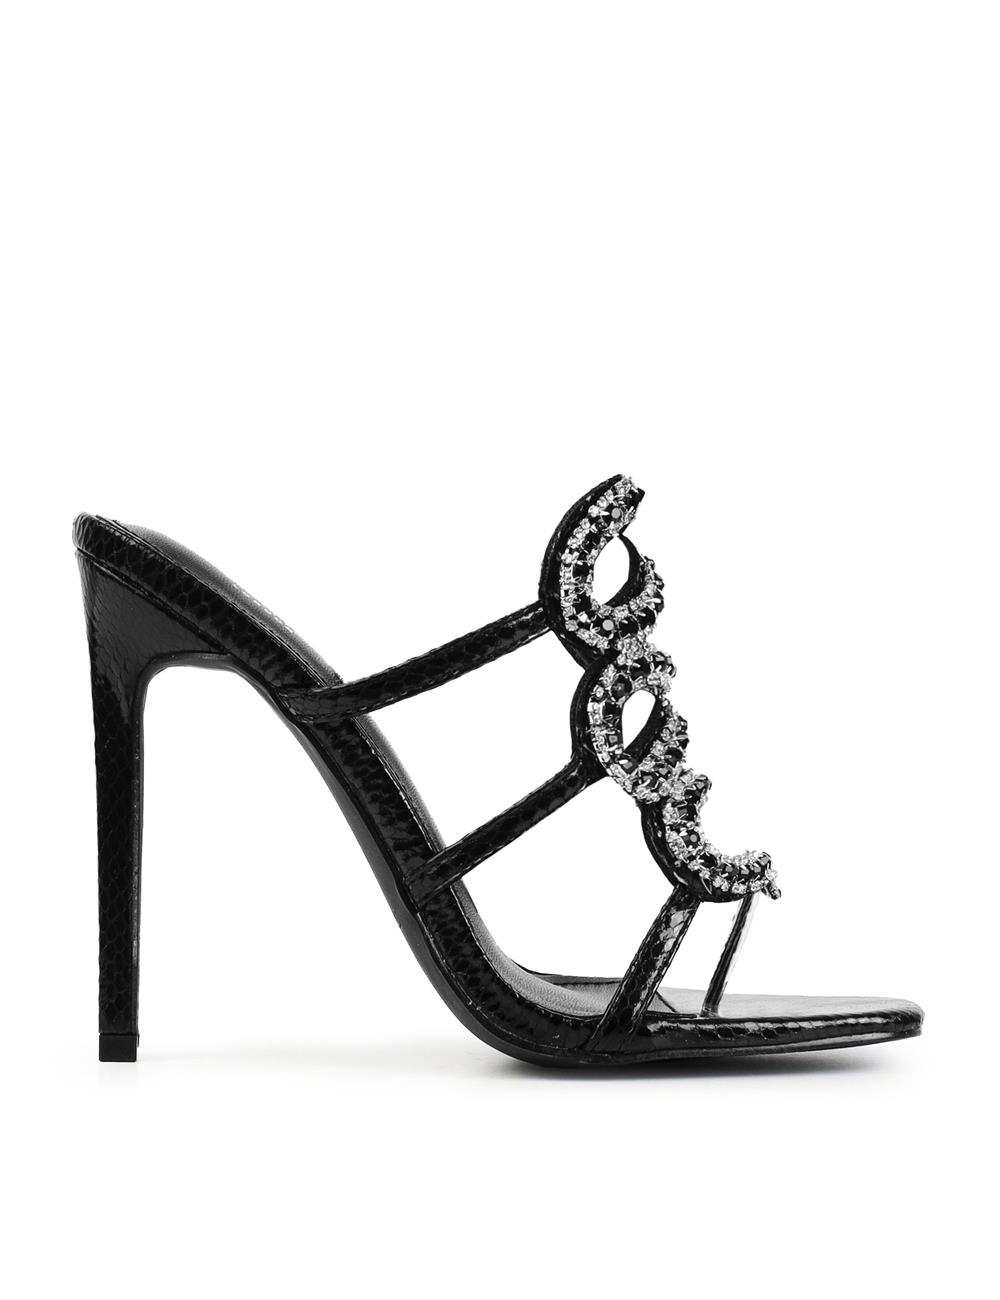 Pretti Kristal Taşlı Topuklu Terlik Siyah - Kadın Ayakkabı